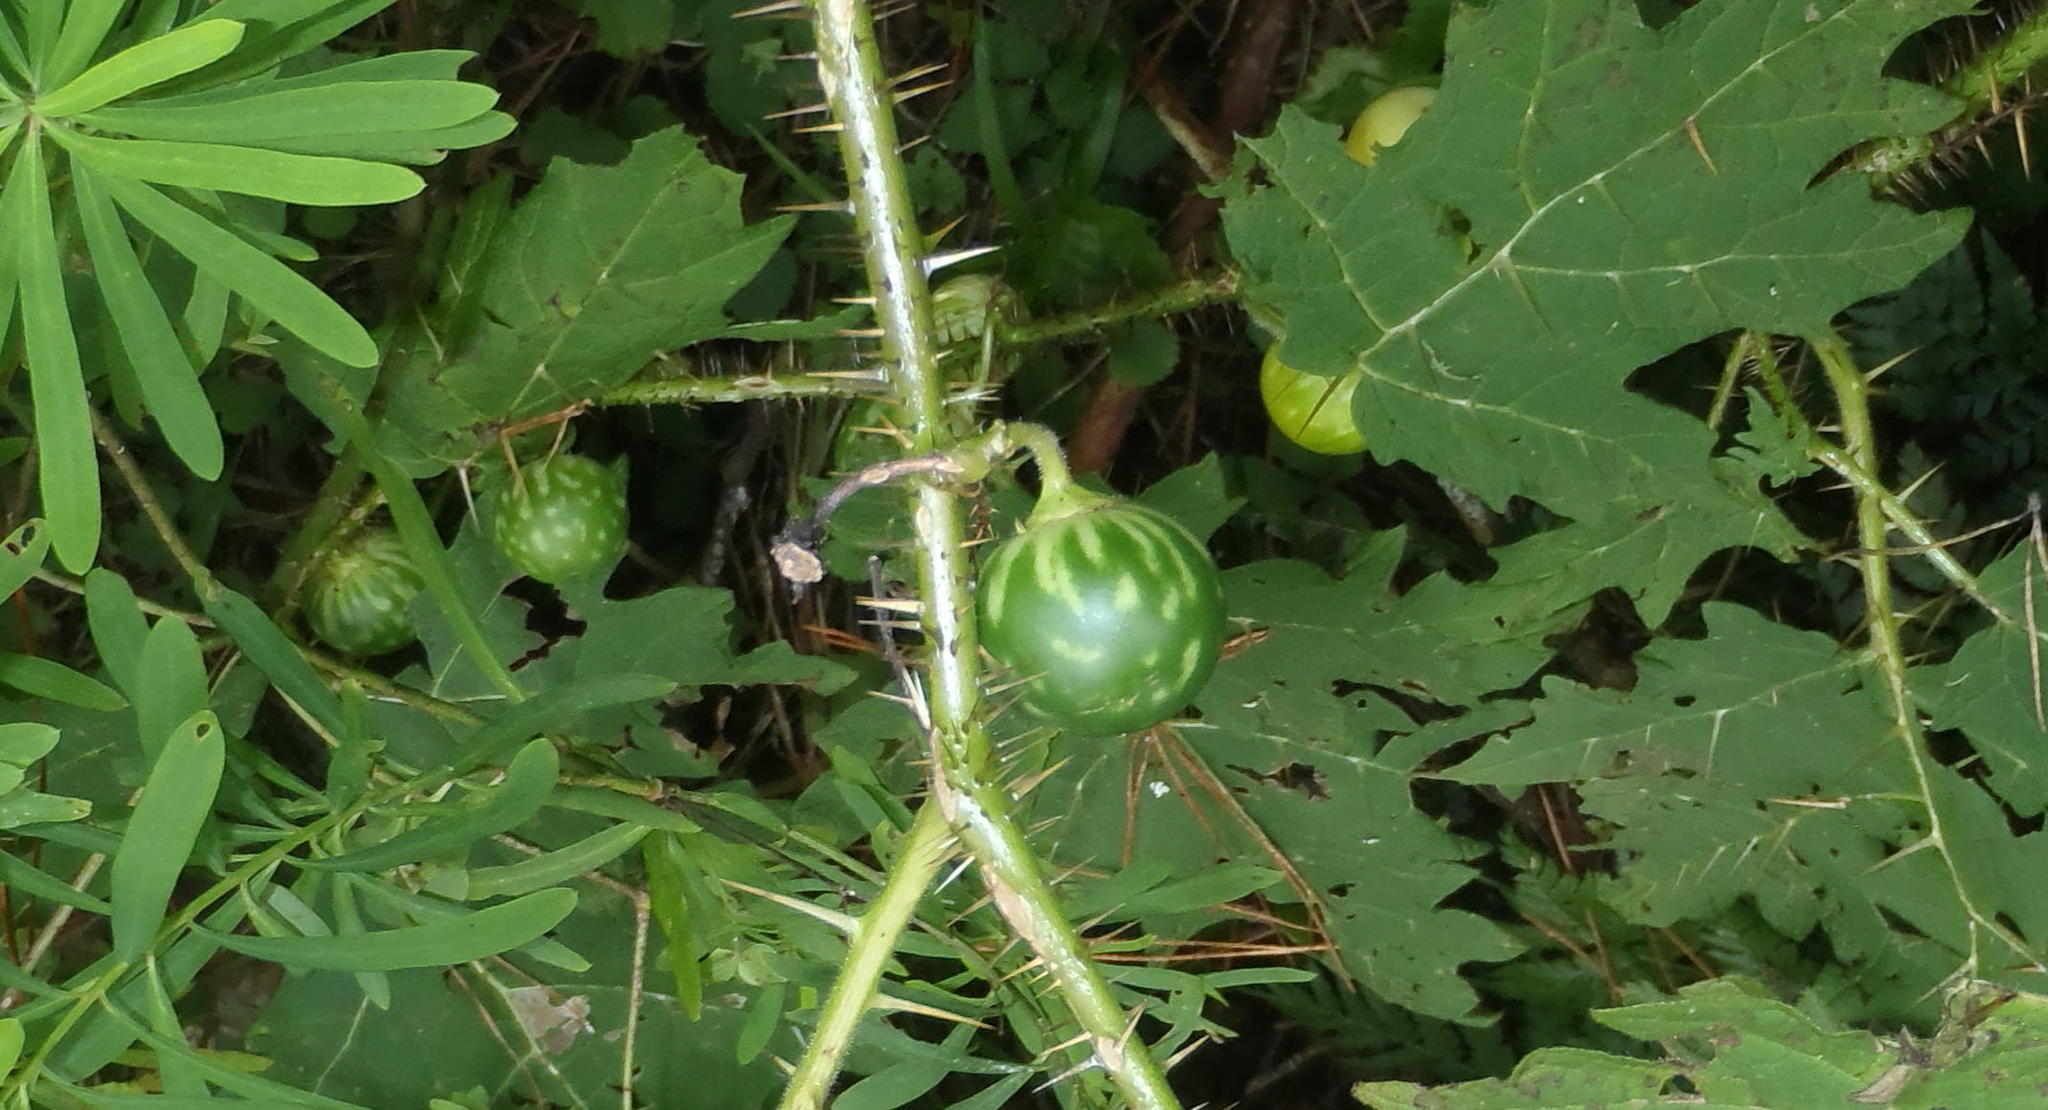 Sarzedo Ecologia: Juá (Solanum aculeatissimum)